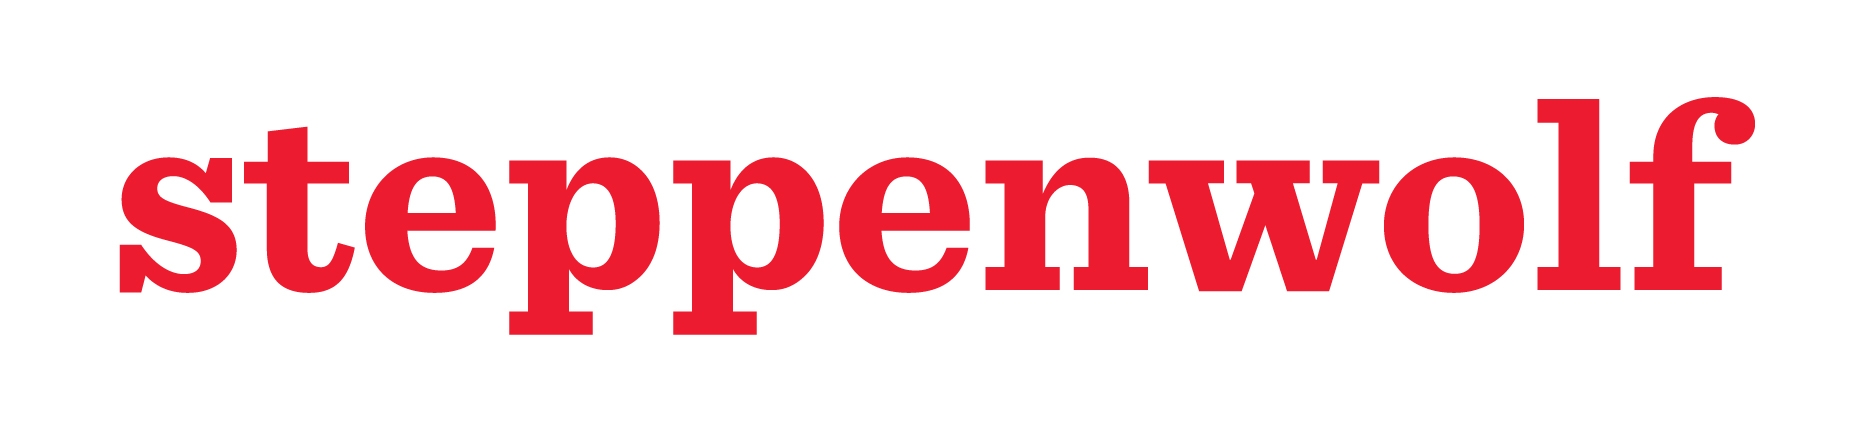 steppenwolf-logo.jpg